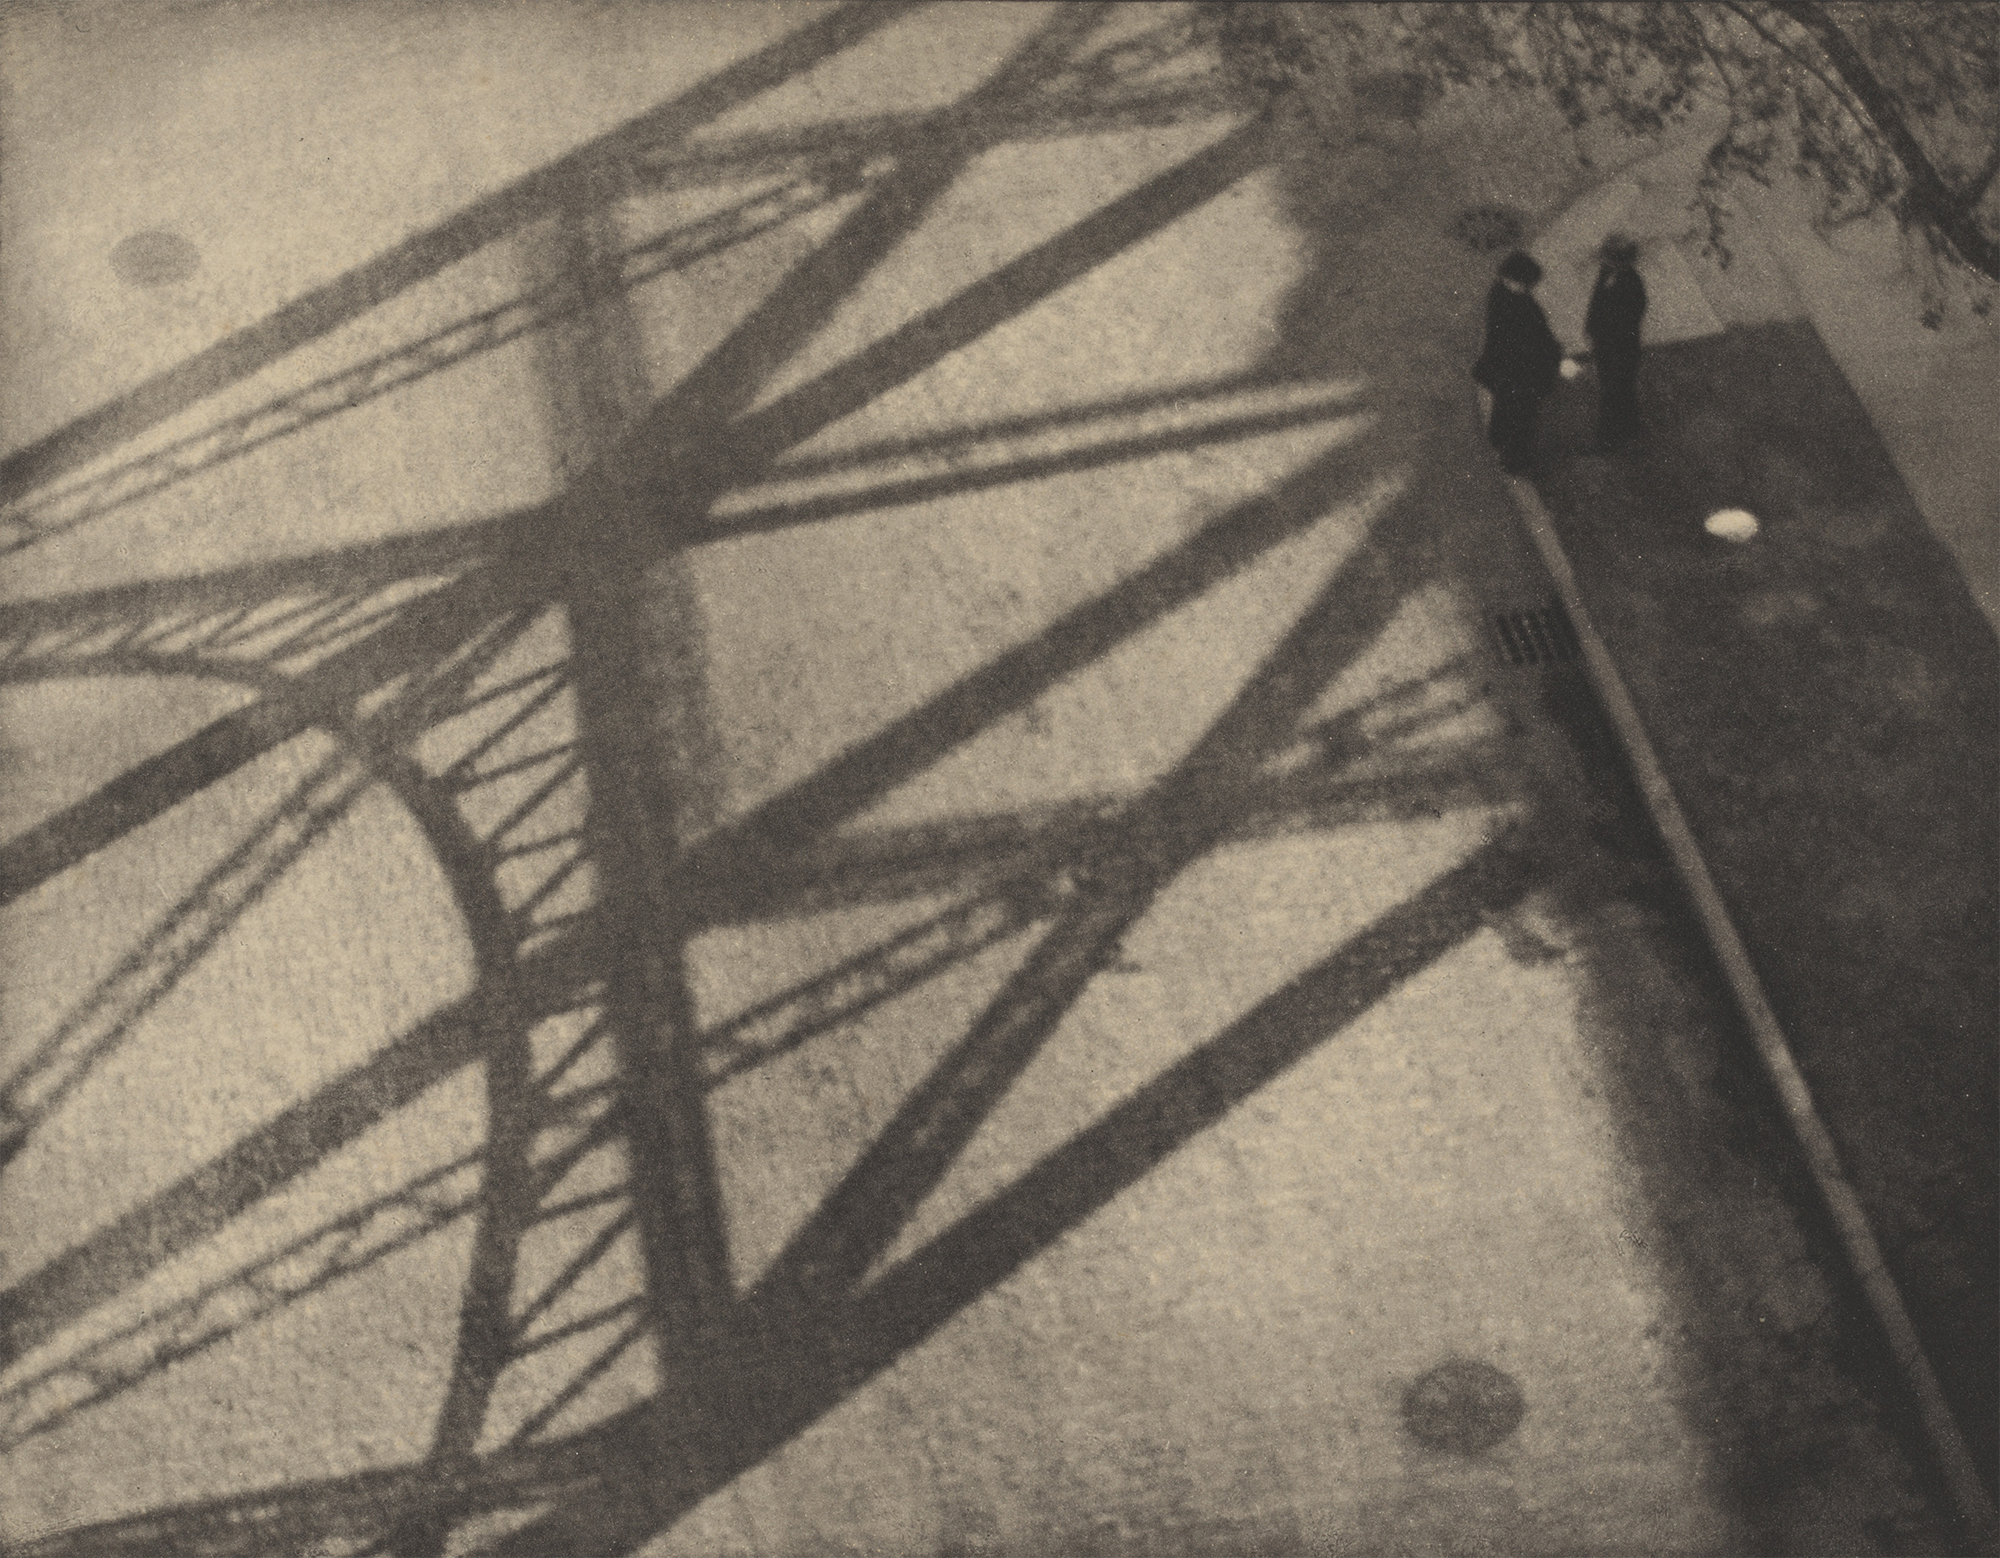 Paul Strand, desde el viaducto, 125th Street, Nueva York, 1915, huecograbado